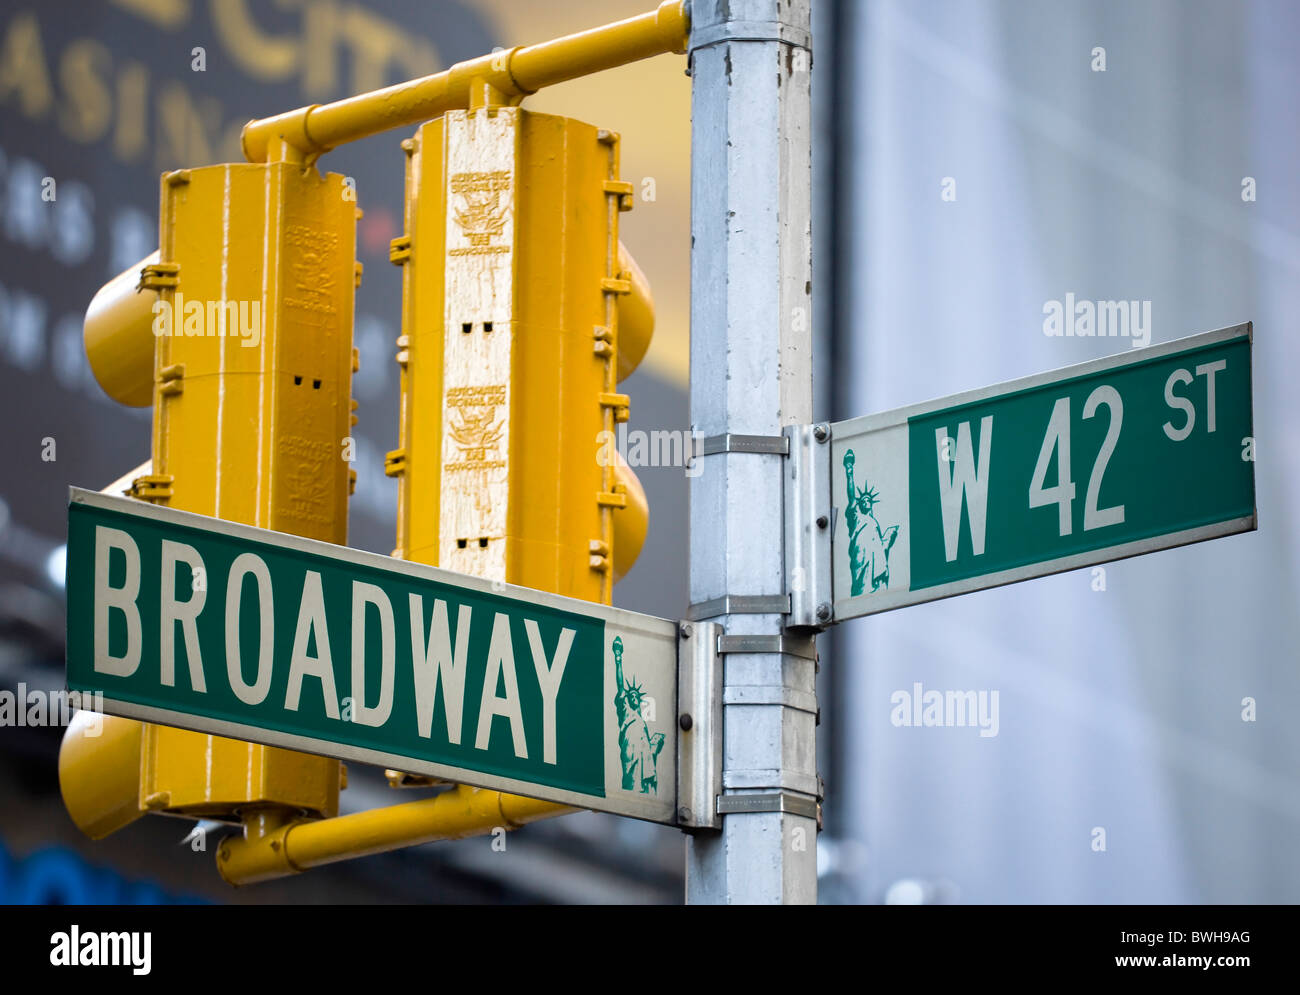 USA, New York, New York, Manhattan, panneaux pour Broadway à la 42e Rue Ouest dans le quartier des théâtres avec feux de circulation. Banque D'Images